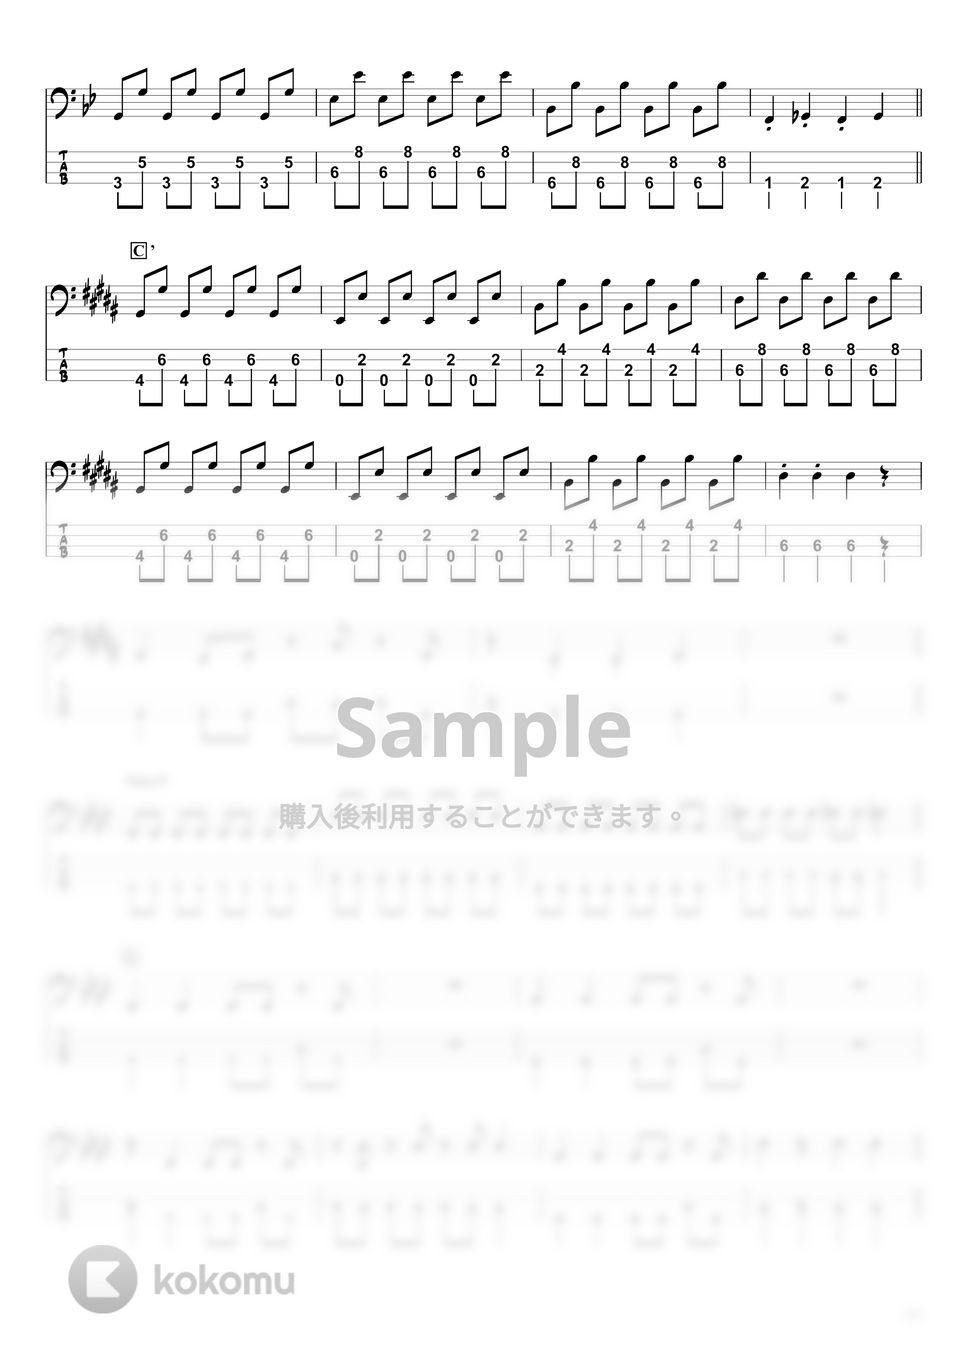 DECO*27 x ピノキオピー - デビルじゃないもん (ベースTAB譜☆4弦ベース対応) by swbass